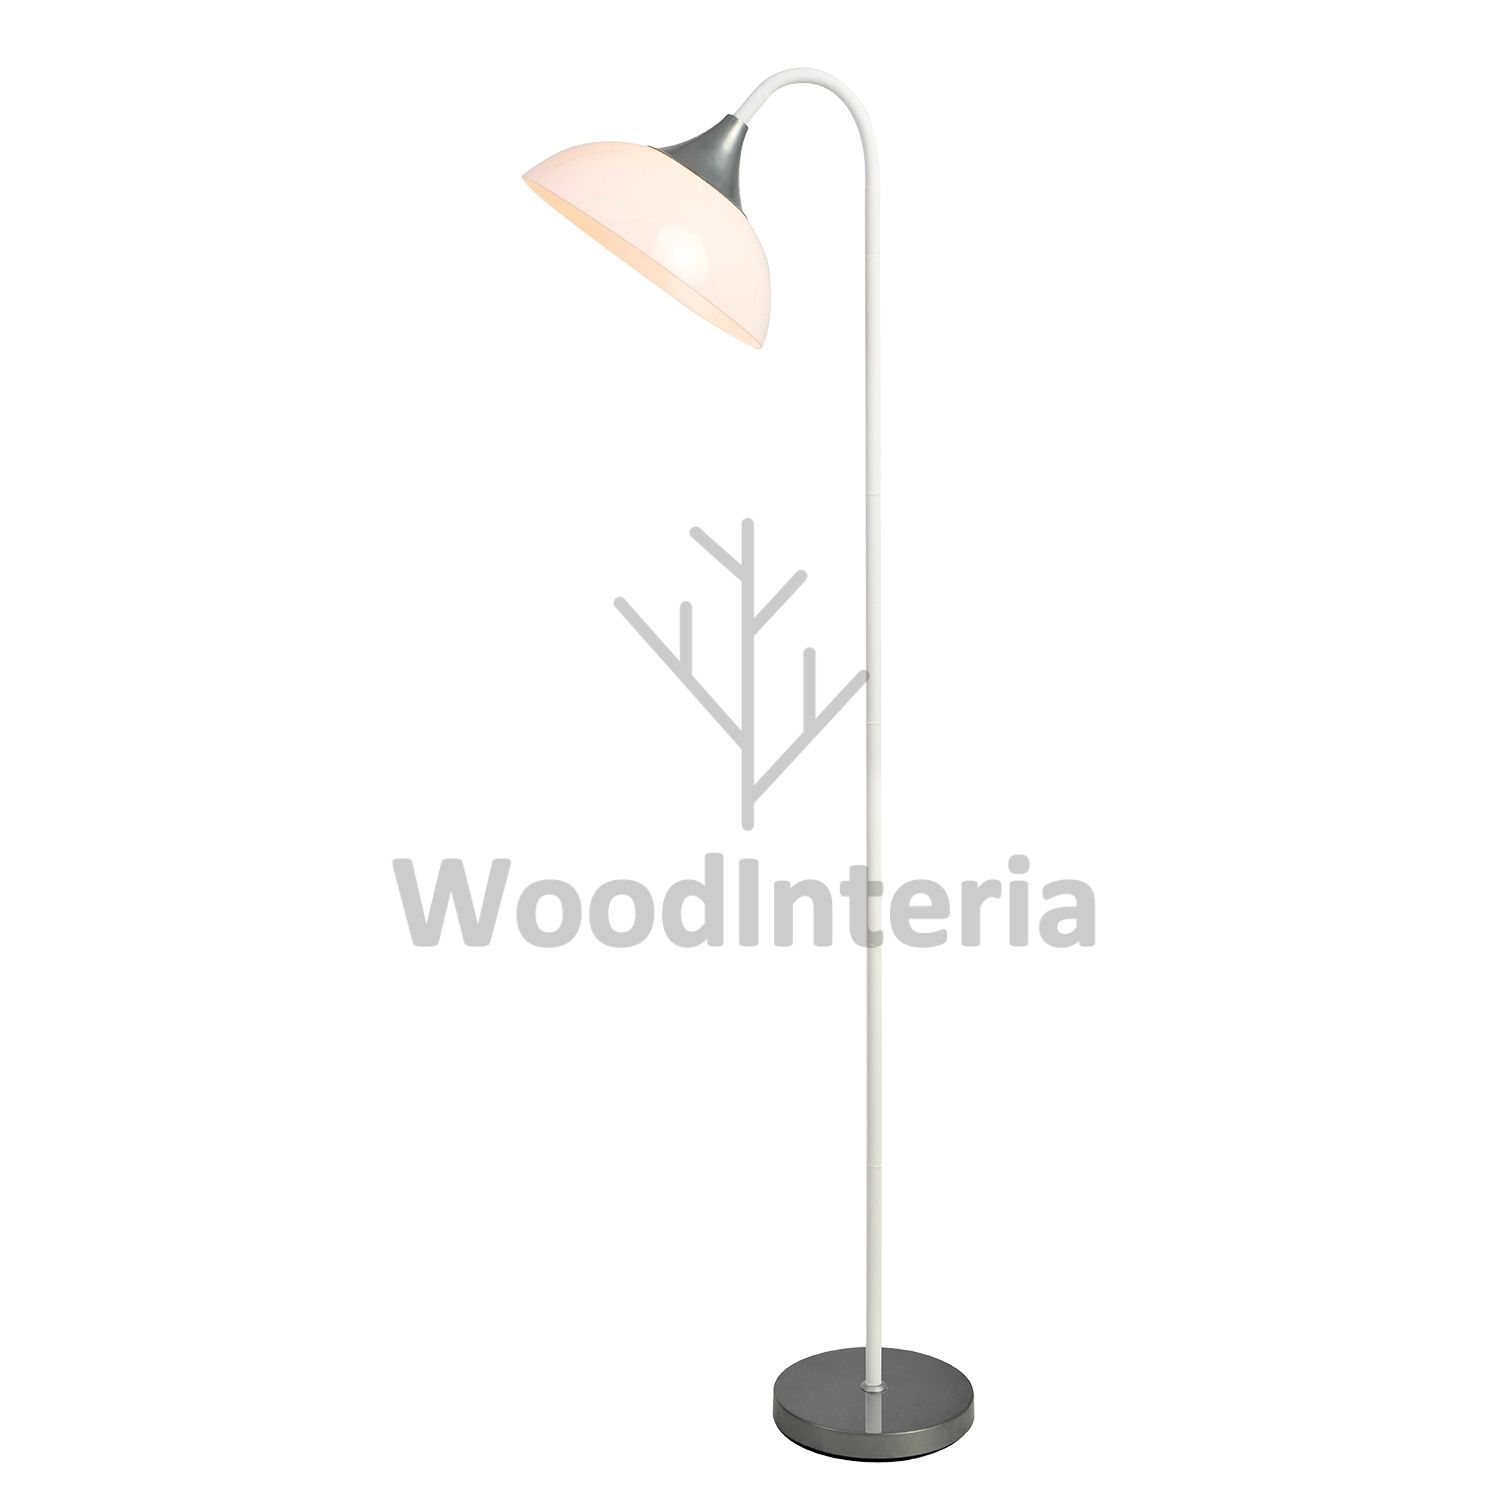 фото напольная лампа umbrella handle white в скандинавском интерьере лофт эко | WoodInteria